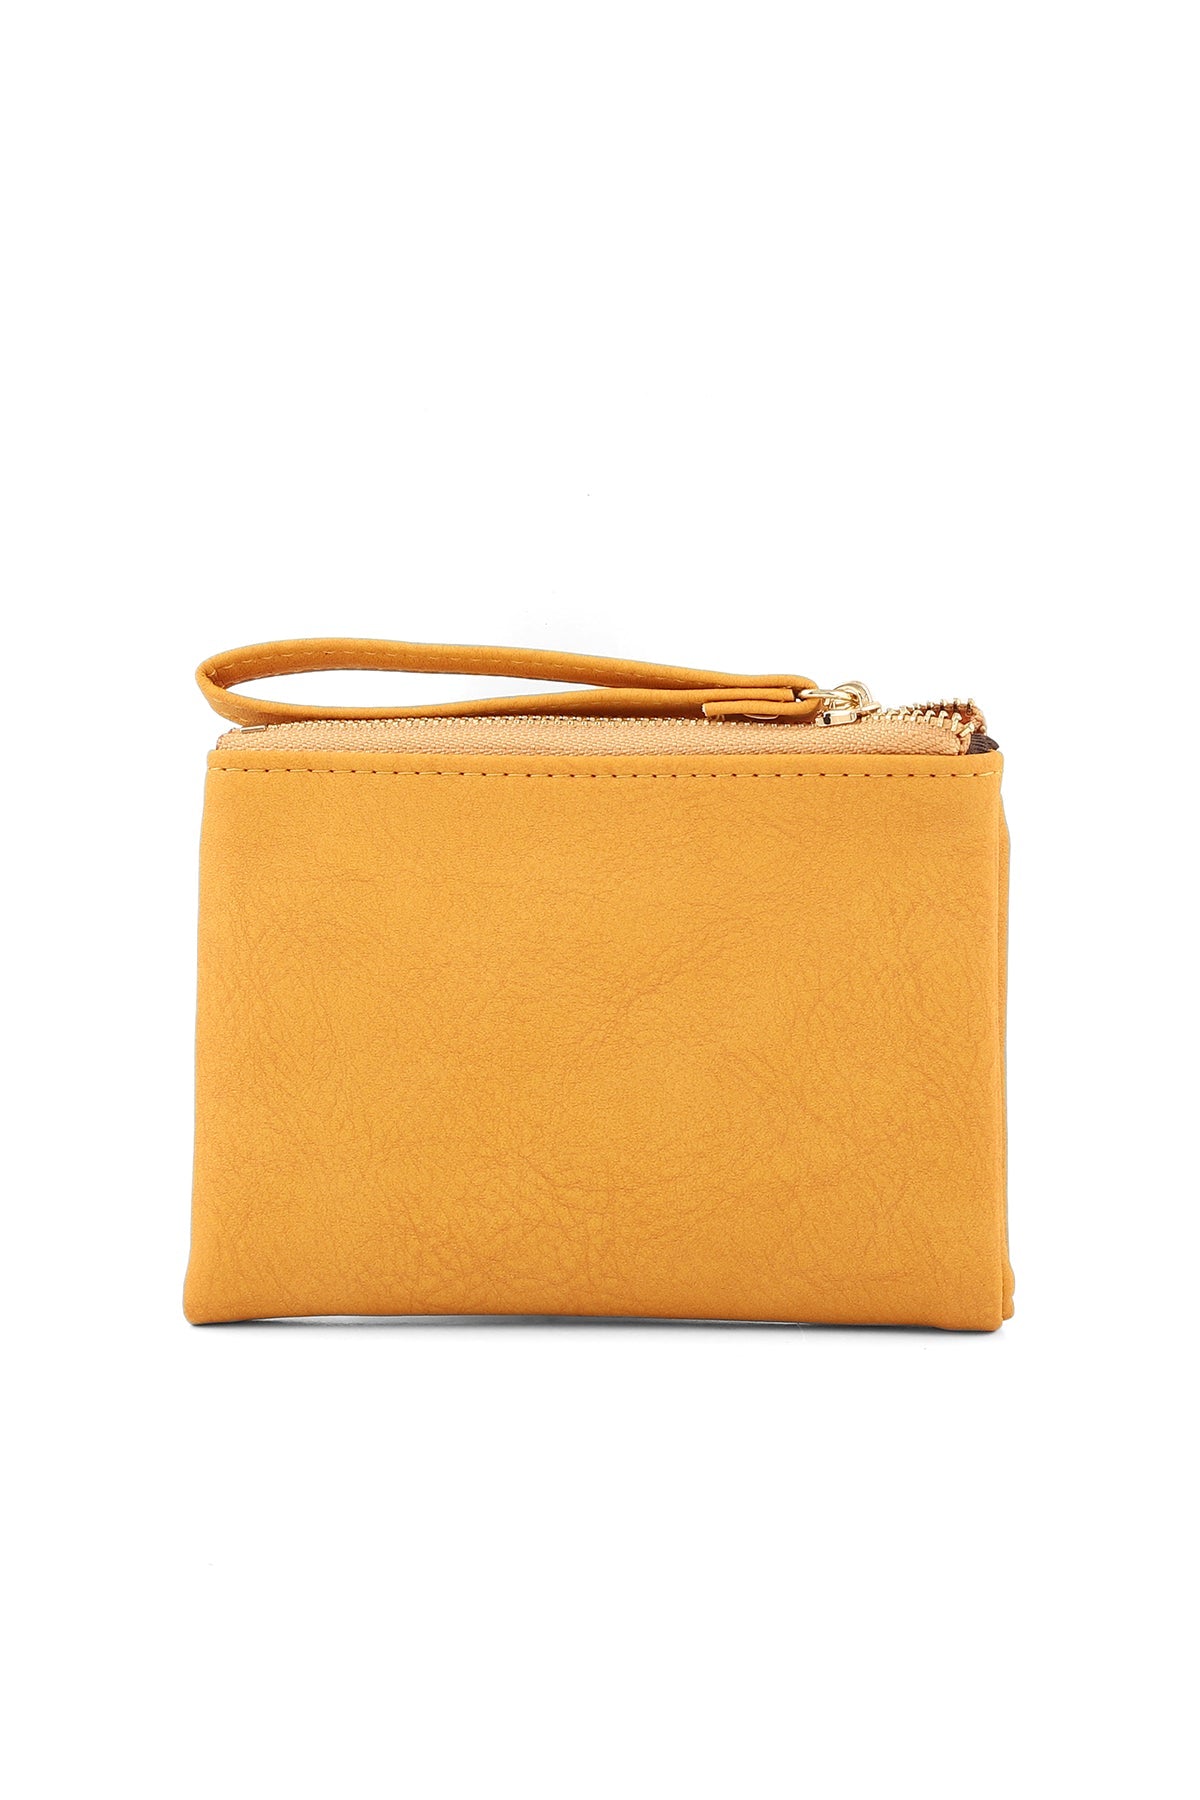 Wristlet Wallet B26037-Yellow